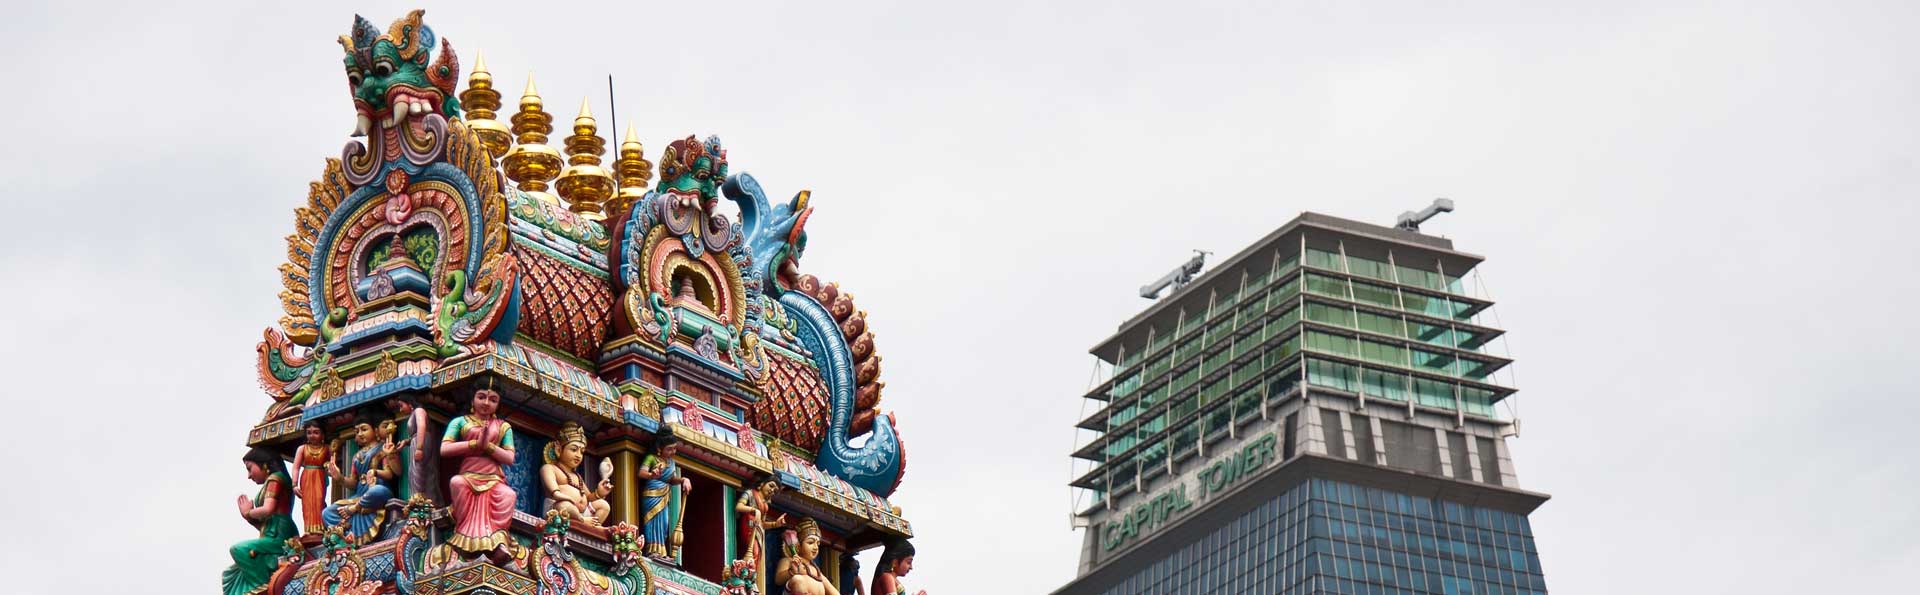 シンガポールのヒンドゥー教寺院 観光地 シンガポール観光ガイド